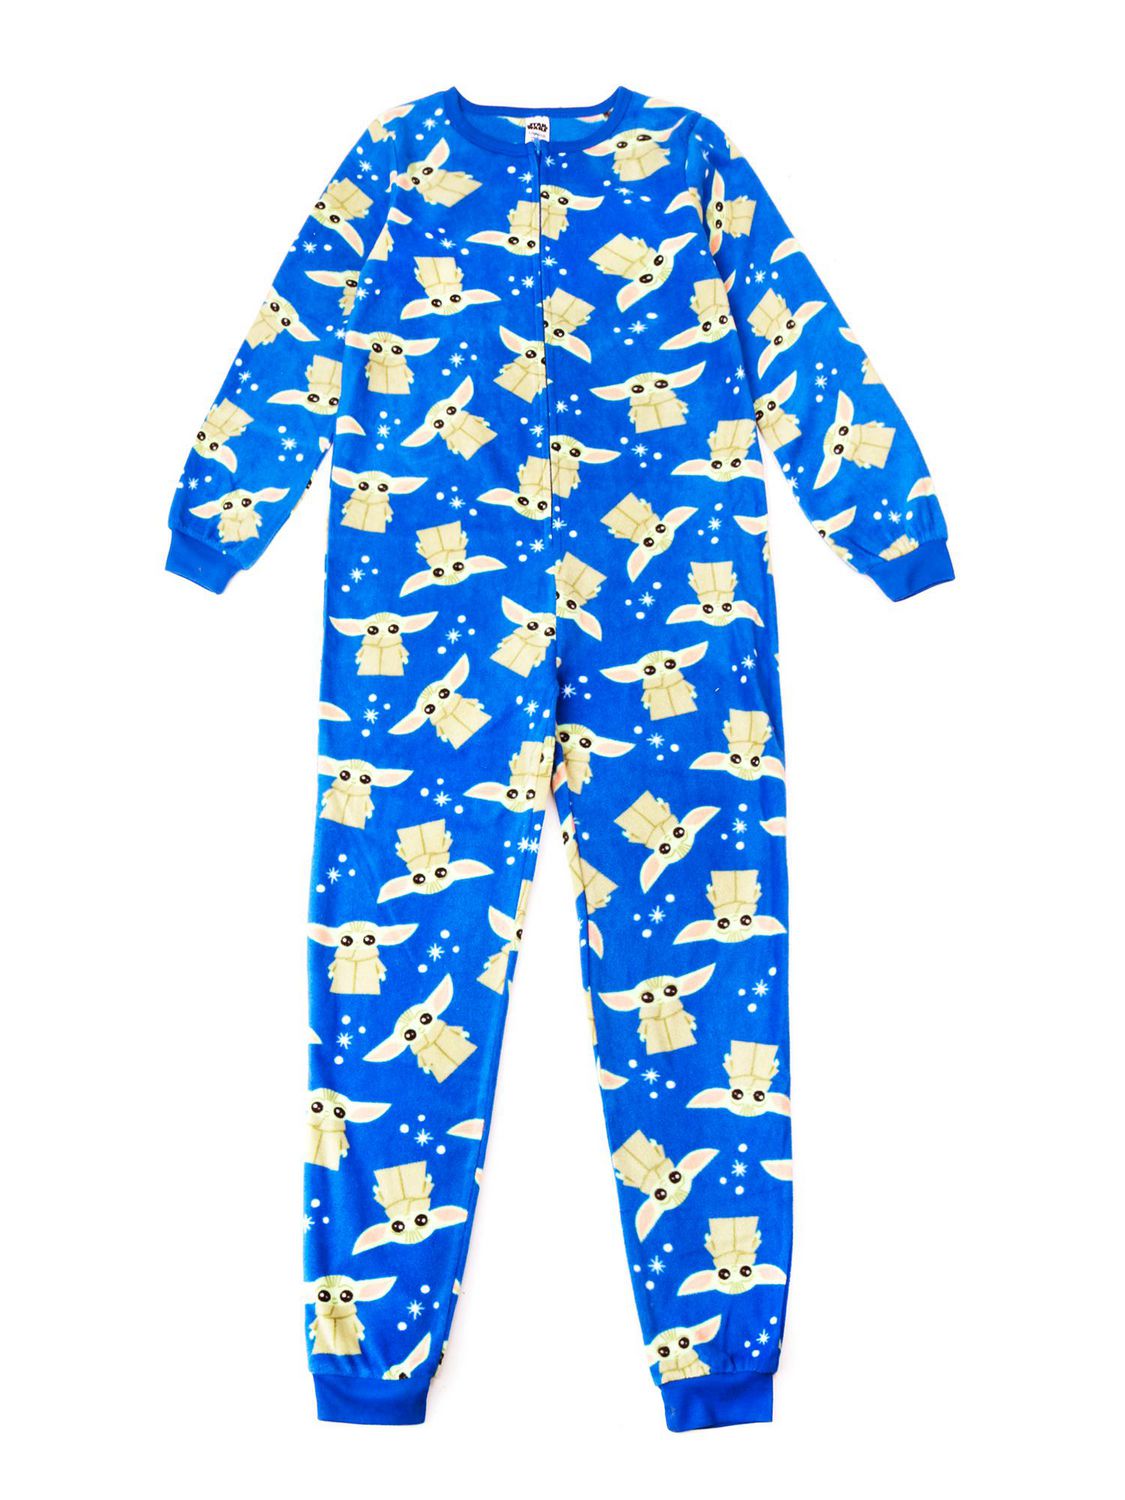 One piece pyjama for boys | Walmart Canada